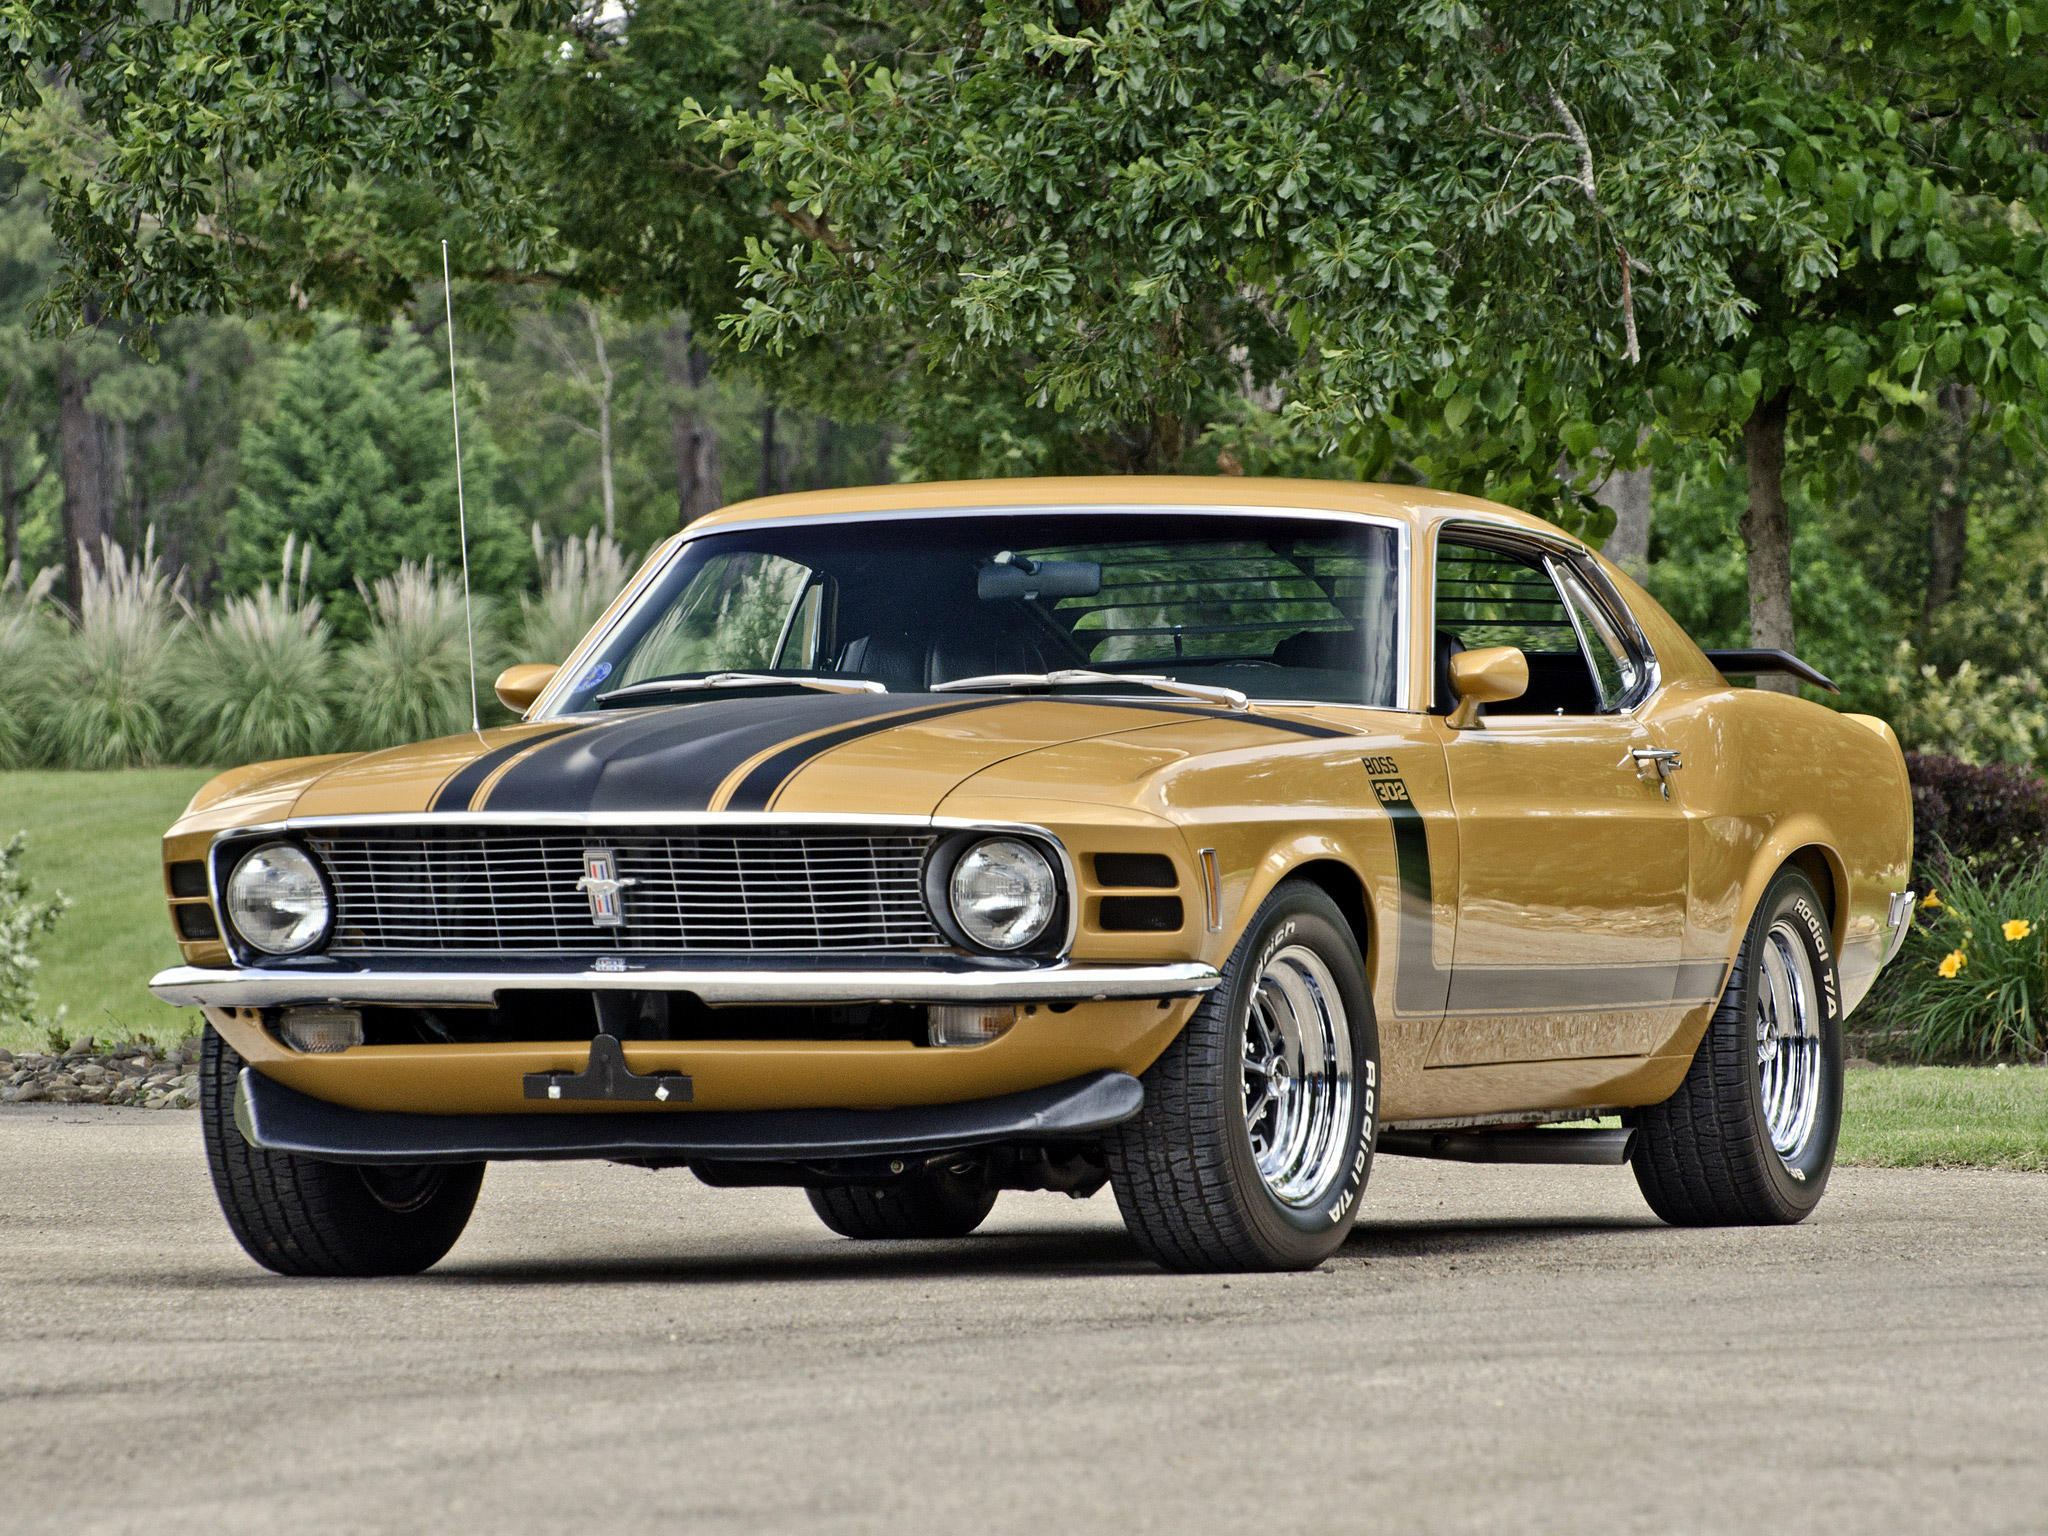 Gold 1970 Boss 302 Mustang